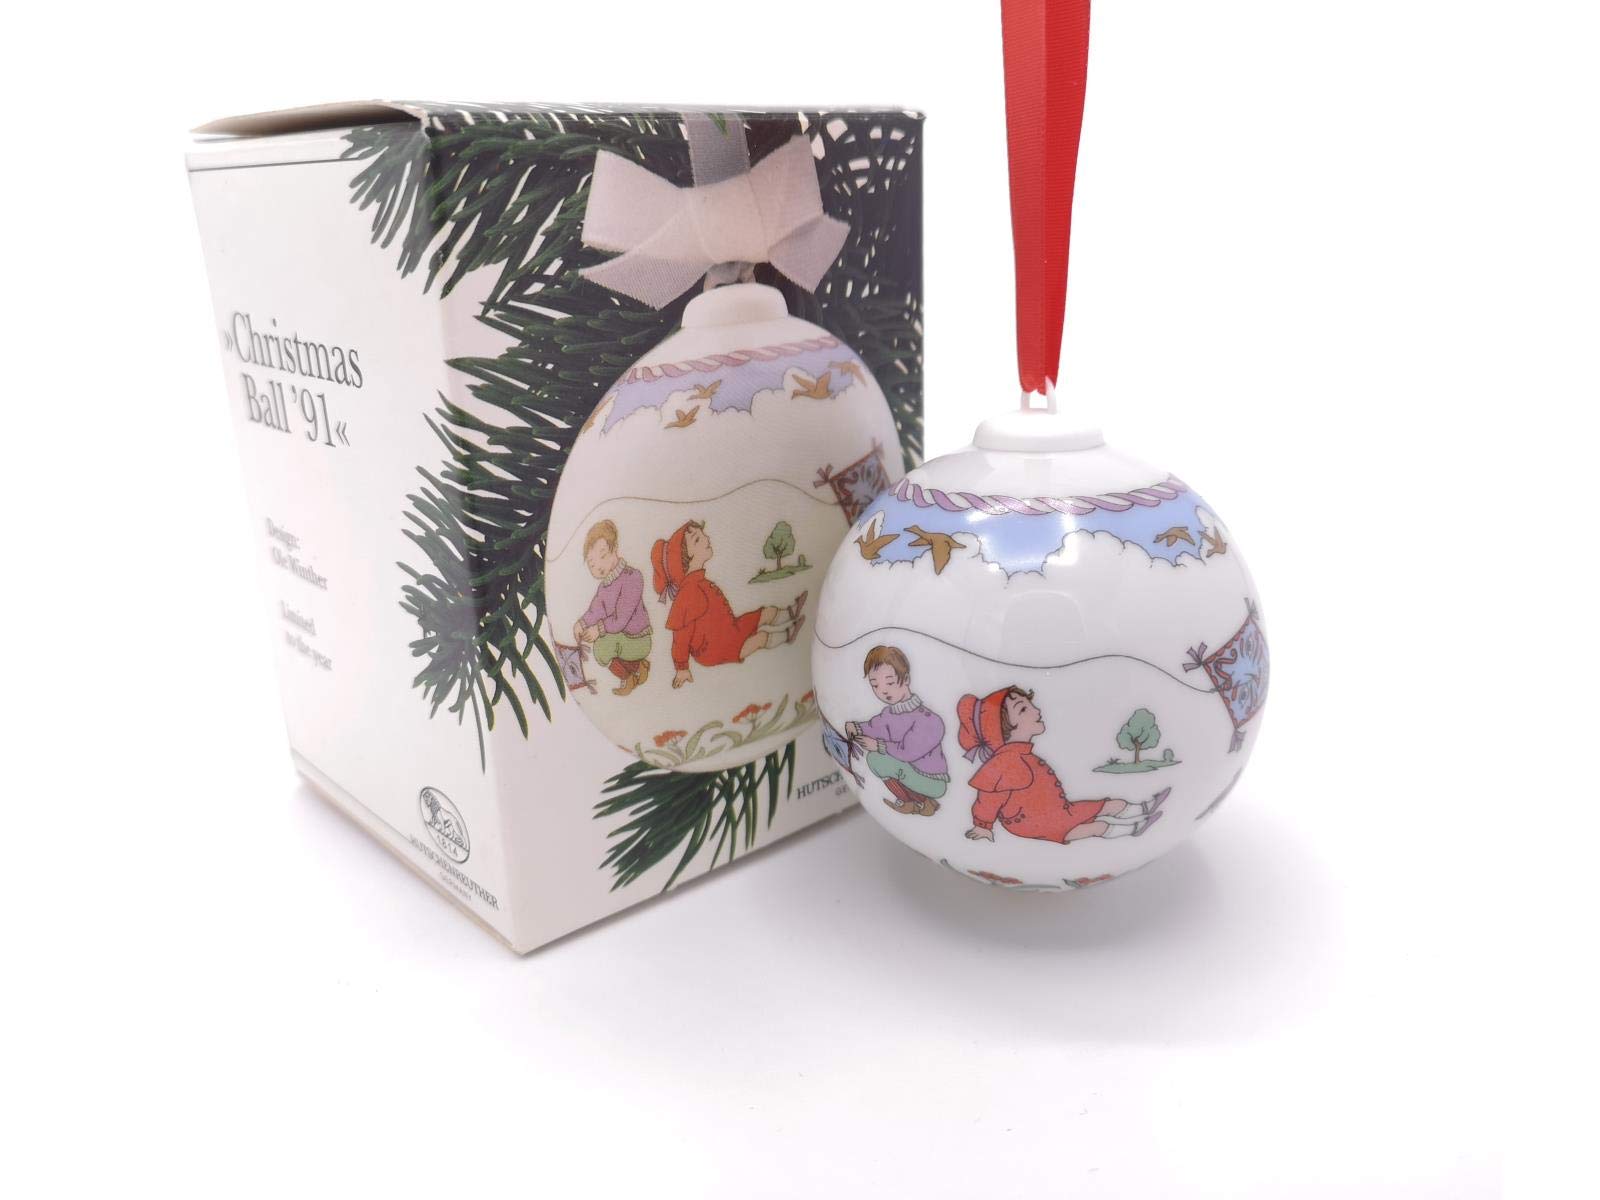 Hutschenreuther Weihnachtskugel 1991 Drachenfliegen, mit Originalverpackung, Porzellankugel Kugel Design von Ole Winther / Porcelain ball / Sfera porcellana